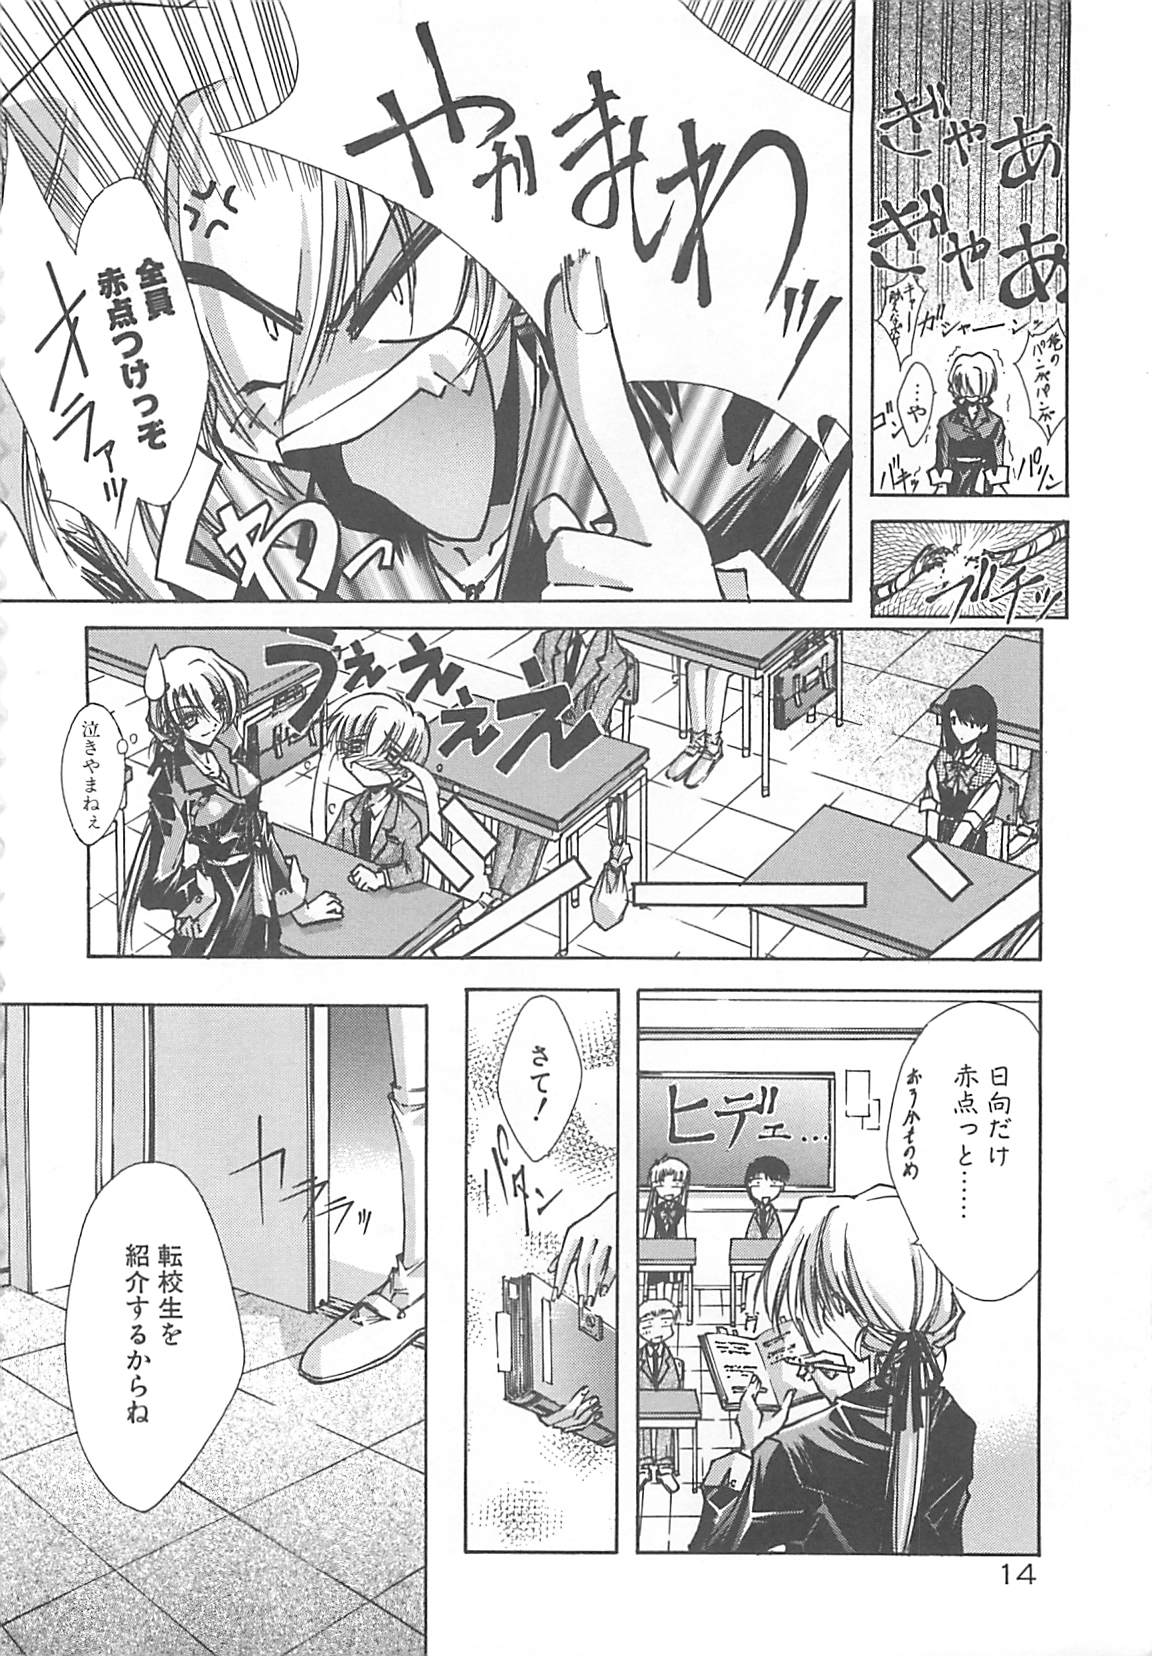 [Serizawa Katsumi] Kanon page 14 full